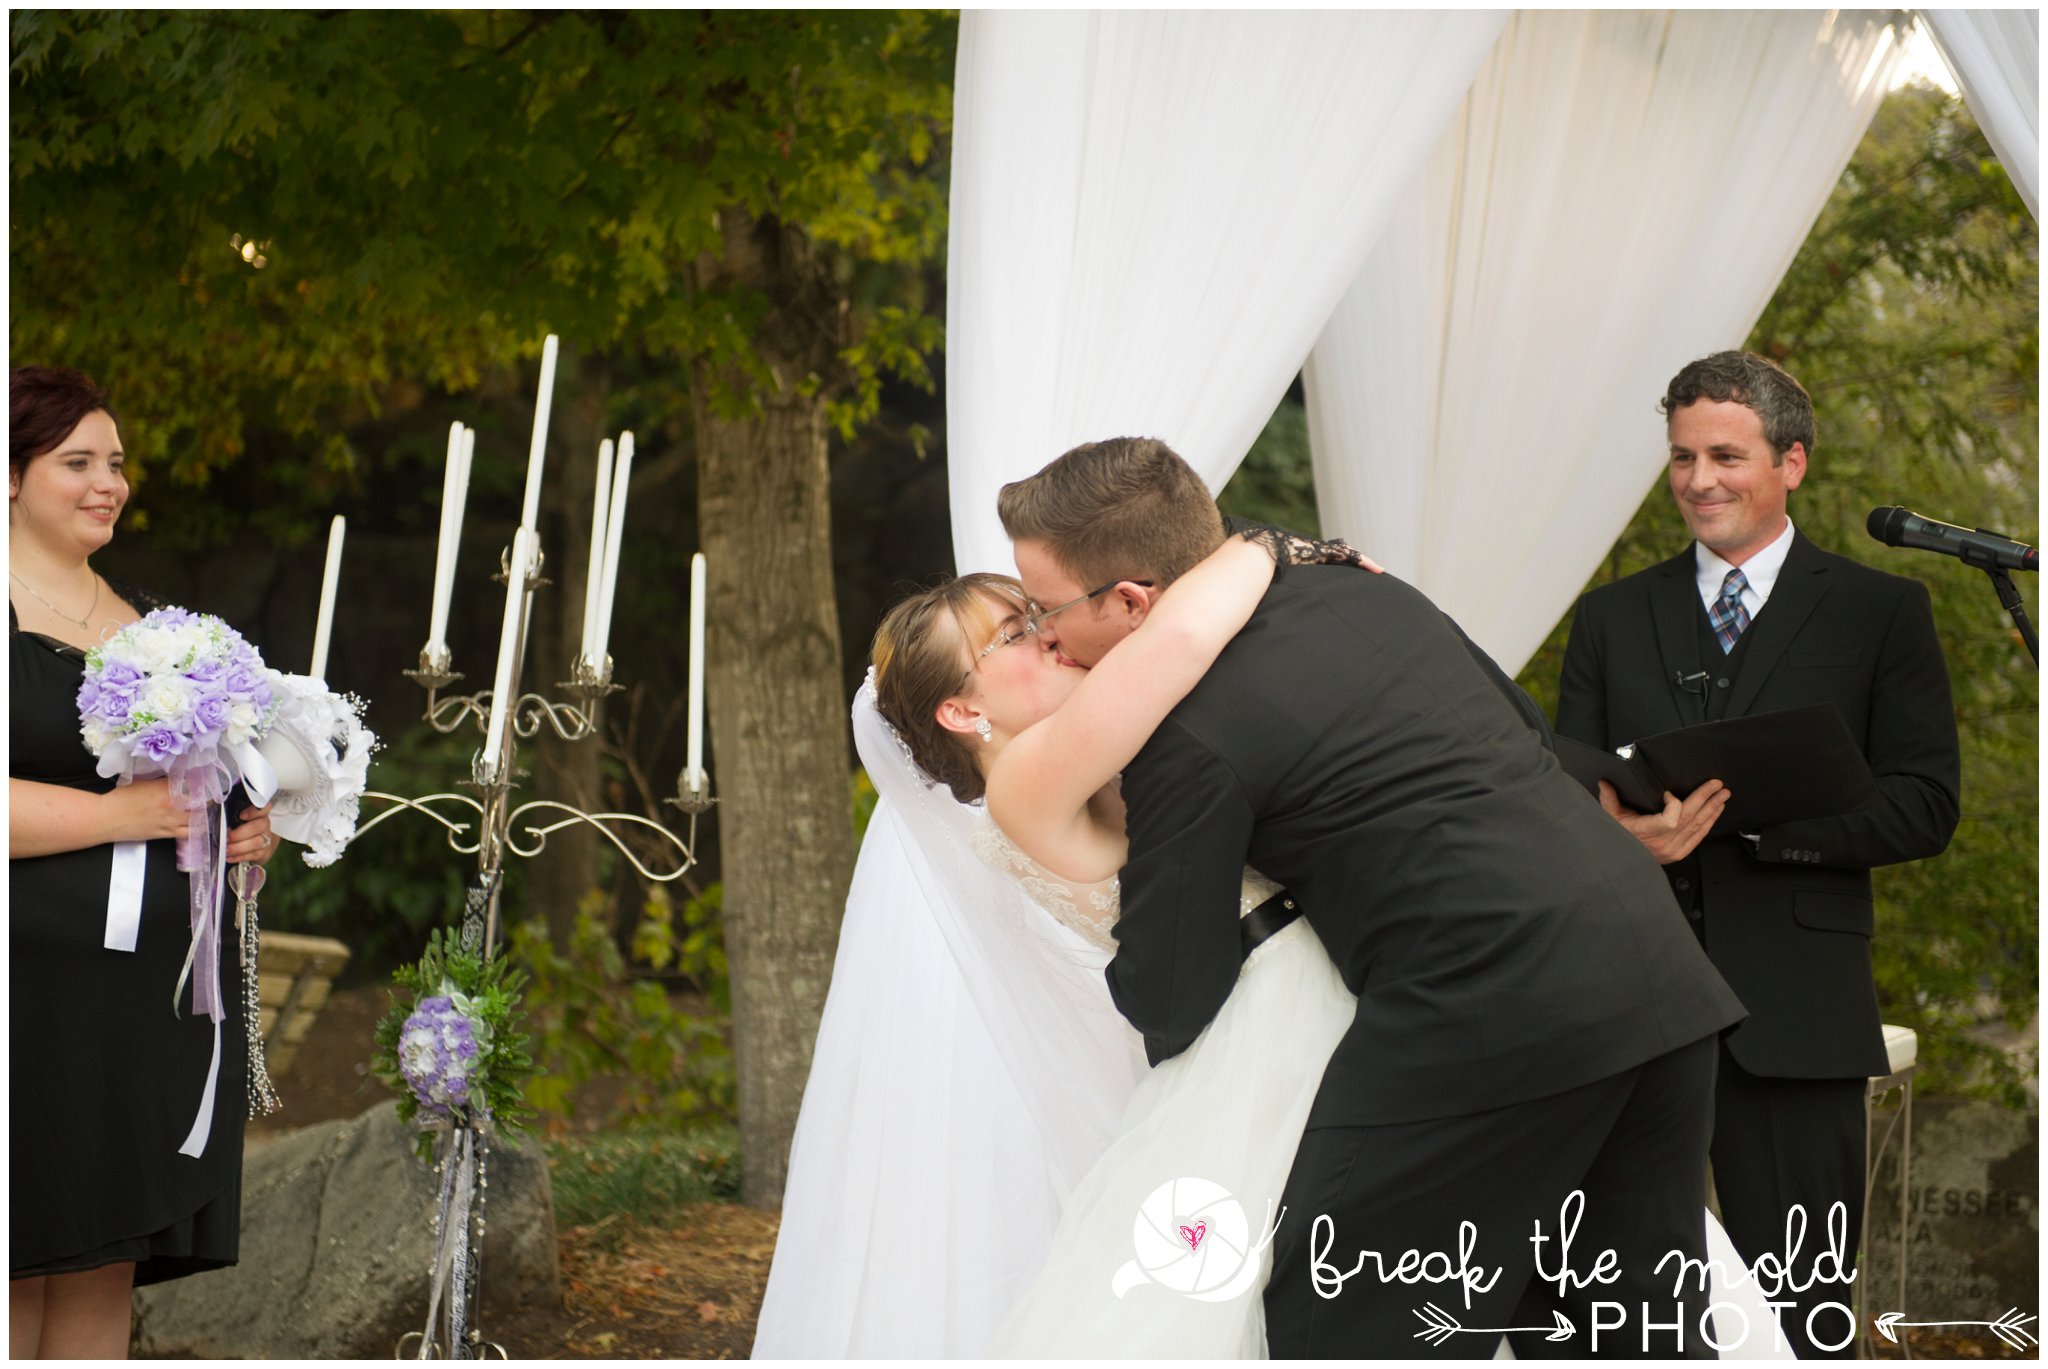 break-the-mold-photo-wedding-zoo-knoxville-tn_5962.jpg